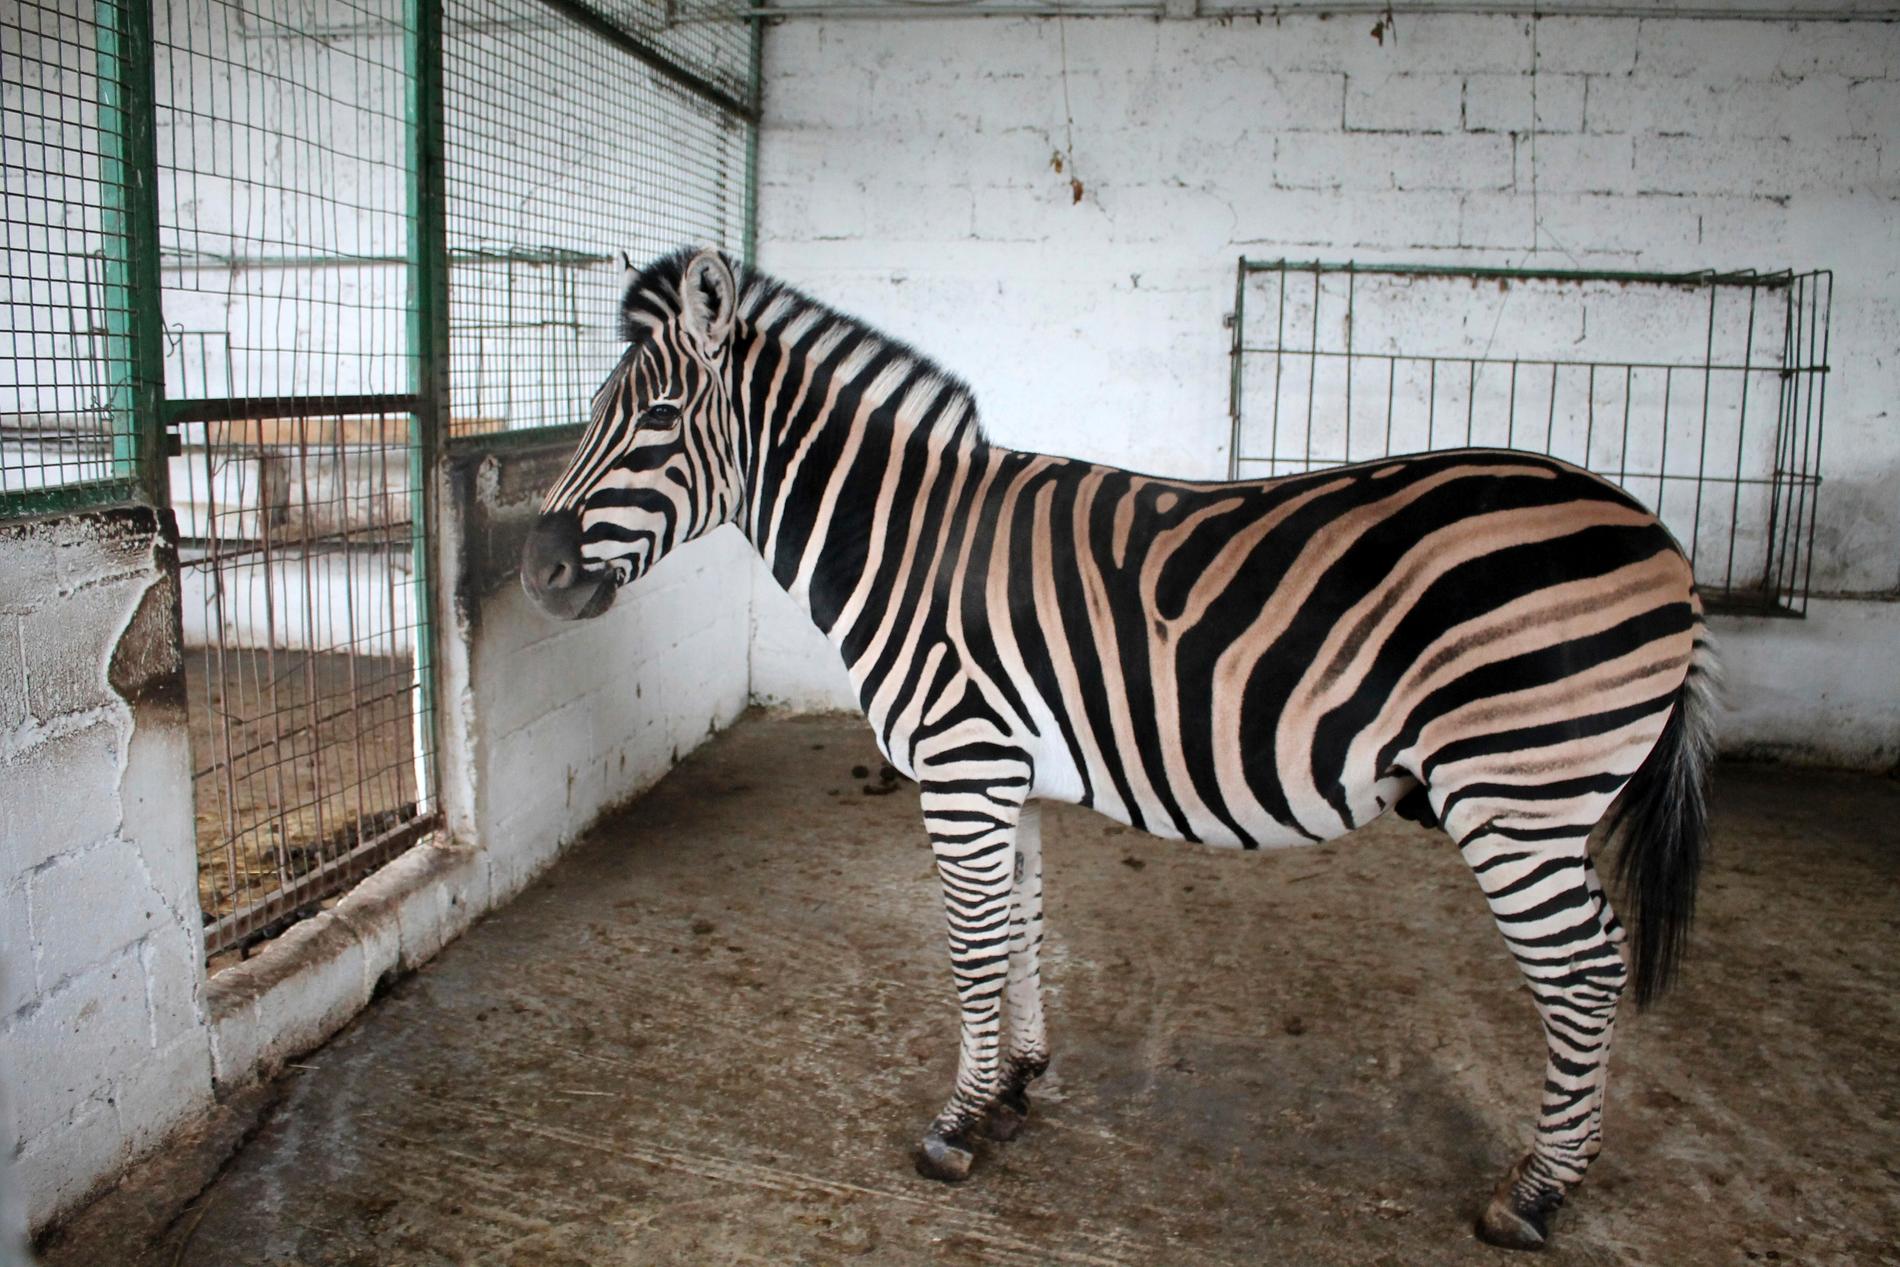 Flera av djuren, däribland zebran, togs om hand av en djurorganisation och flyttades till en annan djurpark.